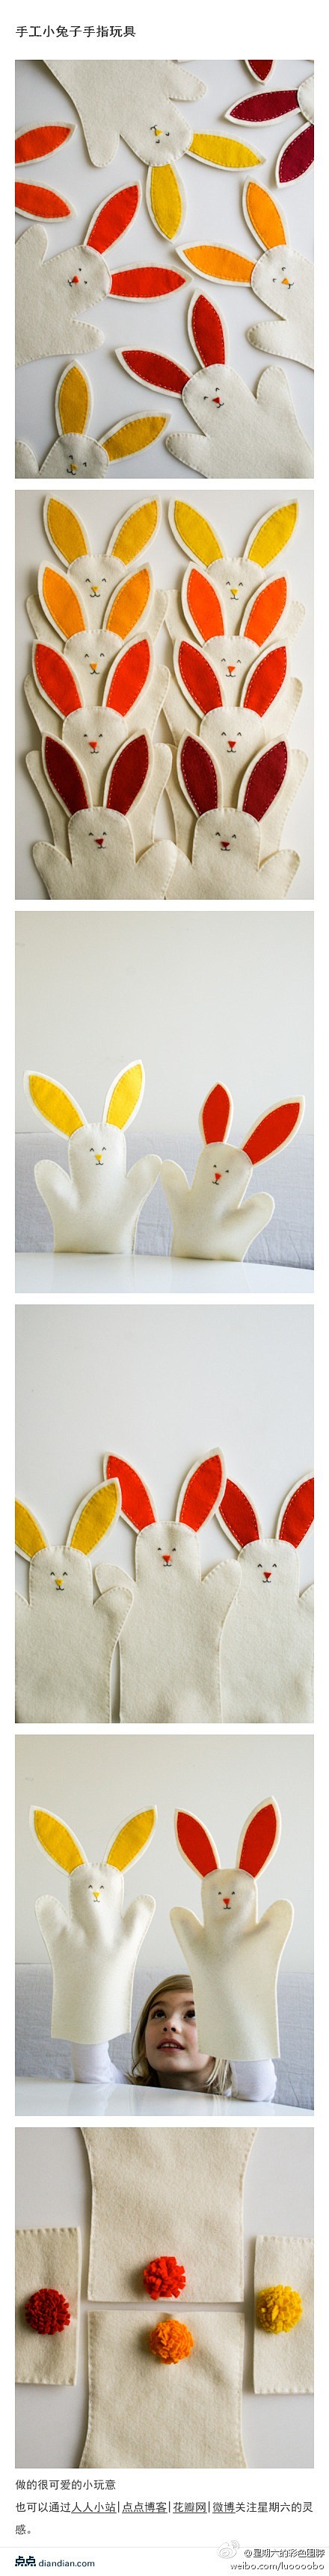 【手工小兔子手指玩具】做的很可爱的小玩意...